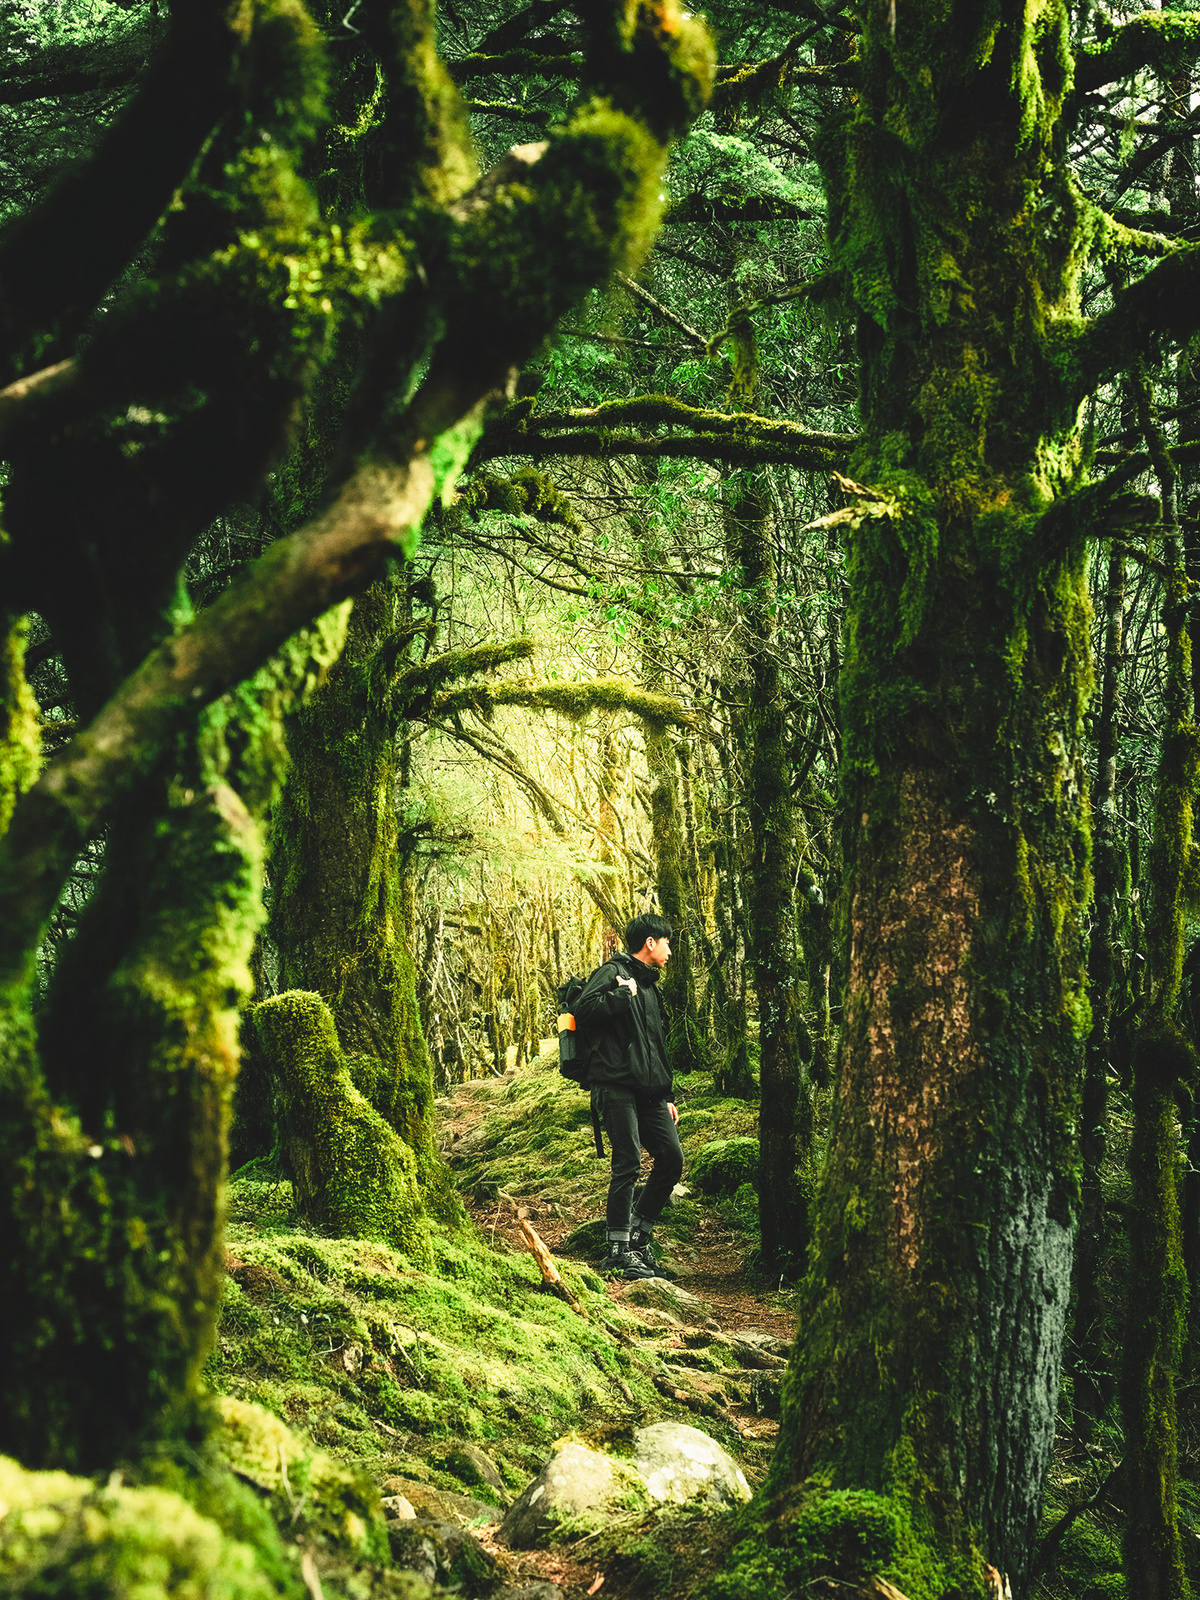 一位徒步旅行者在长满绿苔的树木和小径的森林中穿越